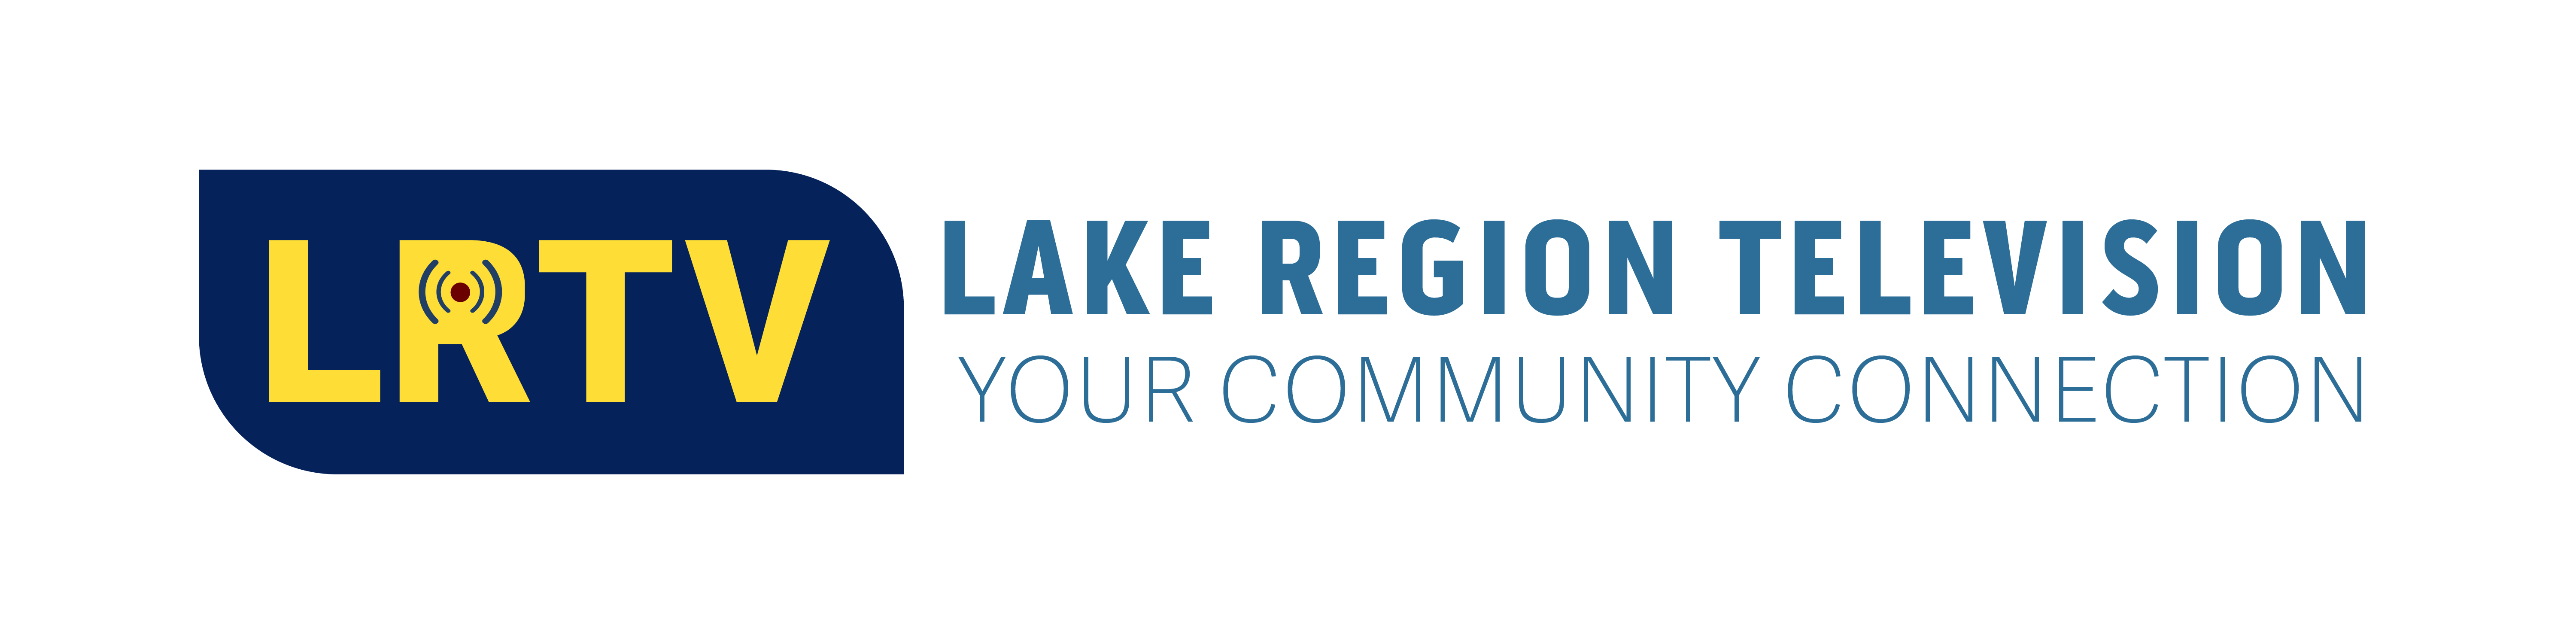 Lake Region TV